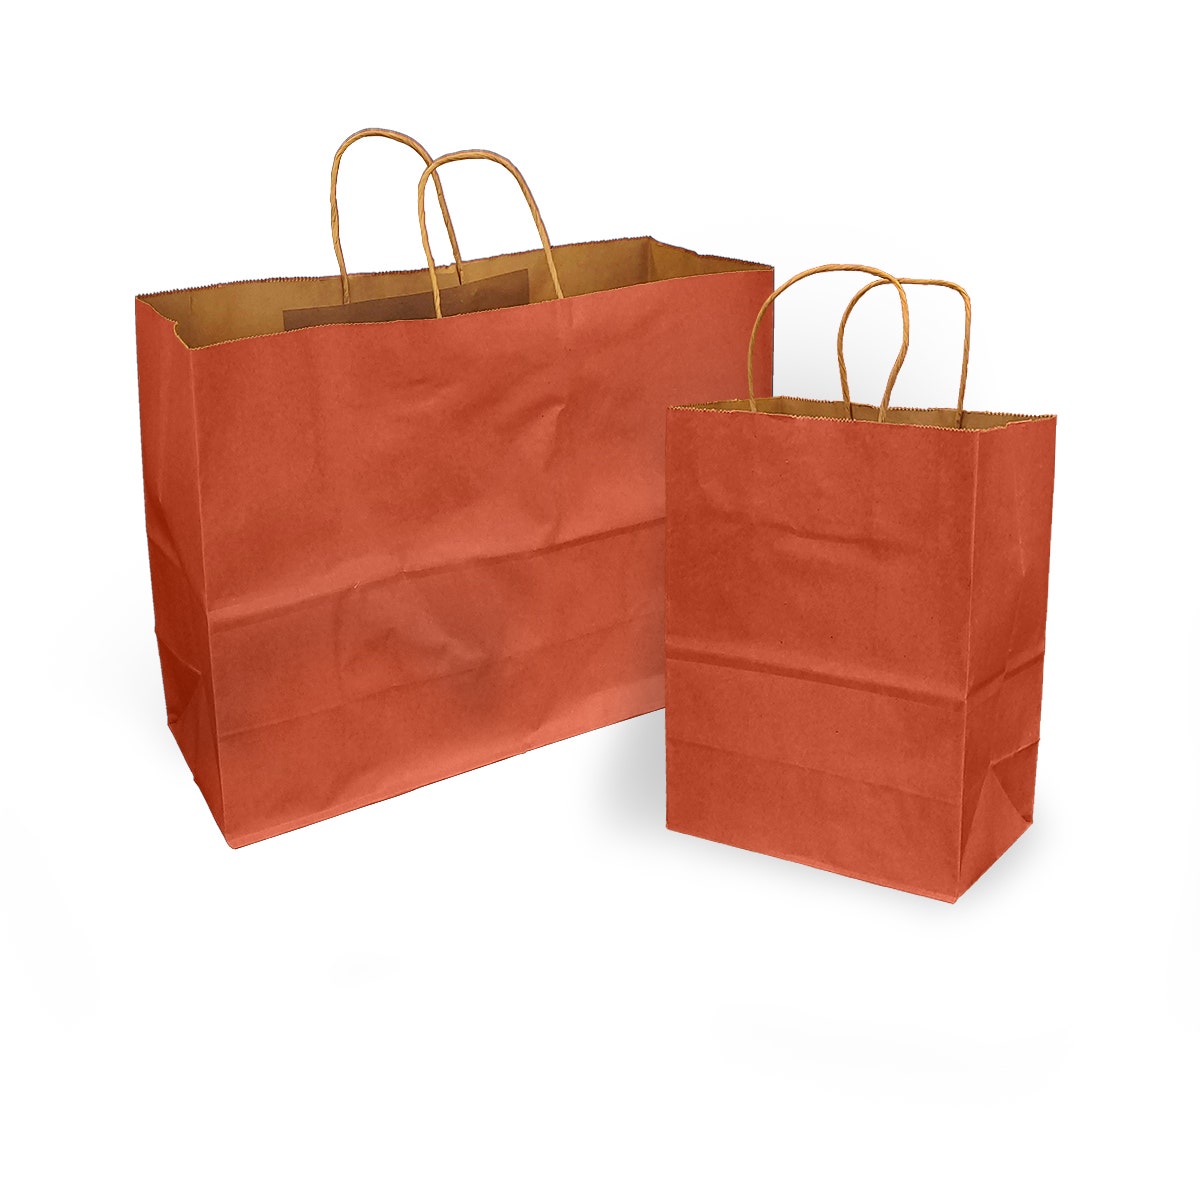 Terra Cotta Orange 100% Recycled Kraft Paper Bags With Handles - Eddie's Hang-Up Display Ltd.